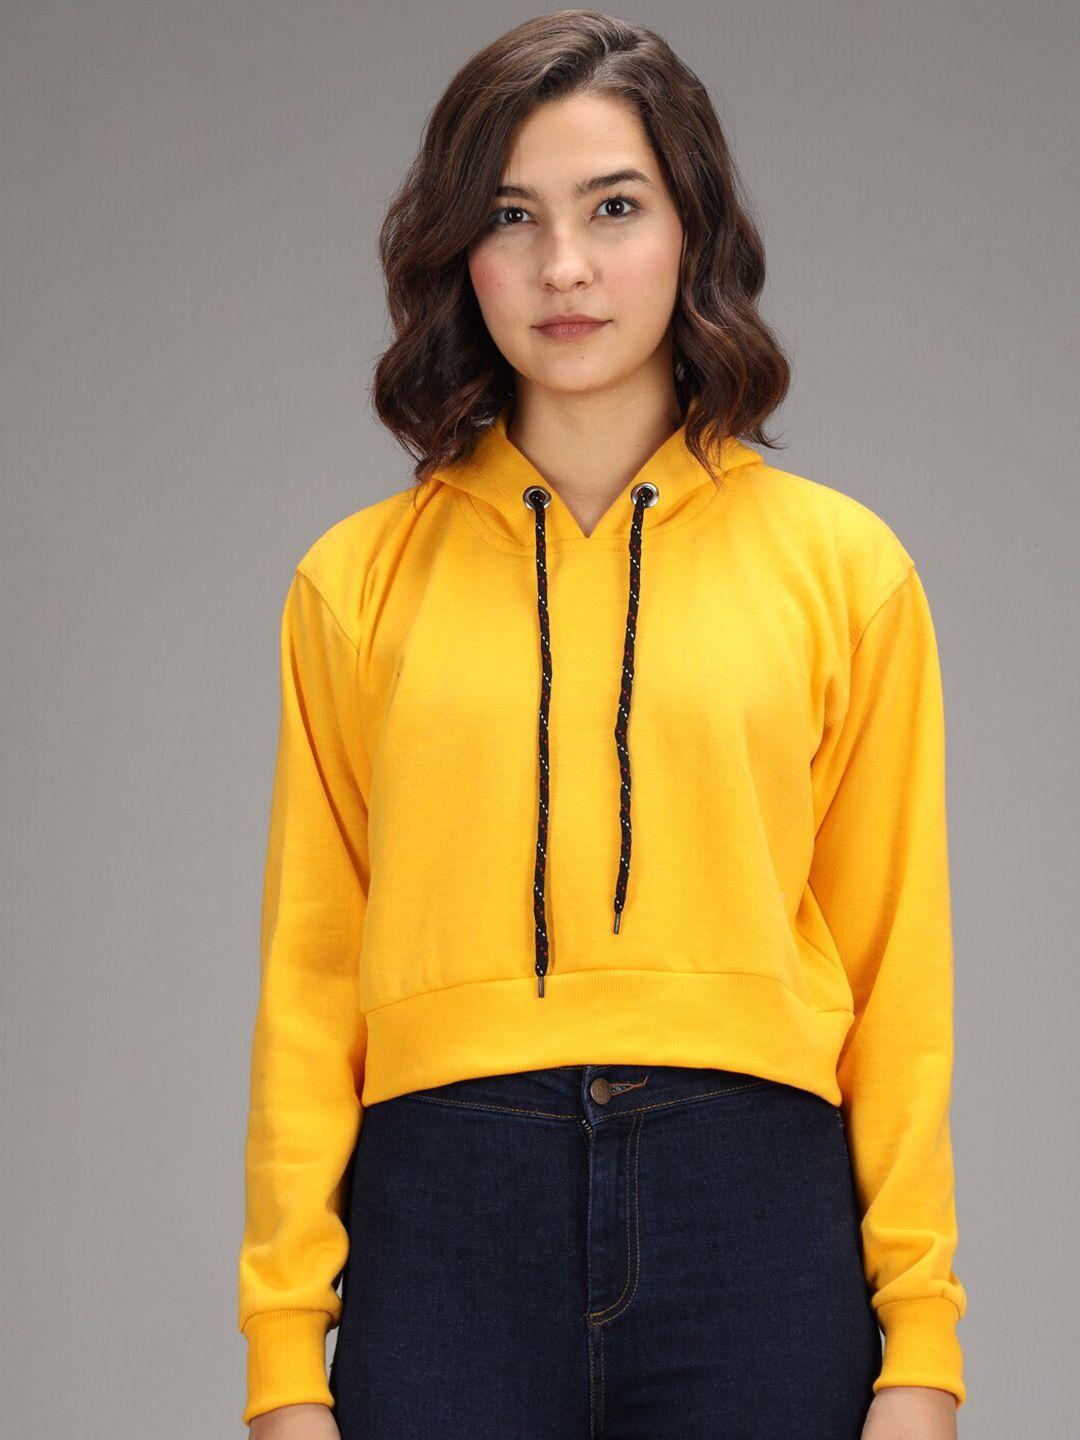 imsa moda women yellow hooded sweatshirt